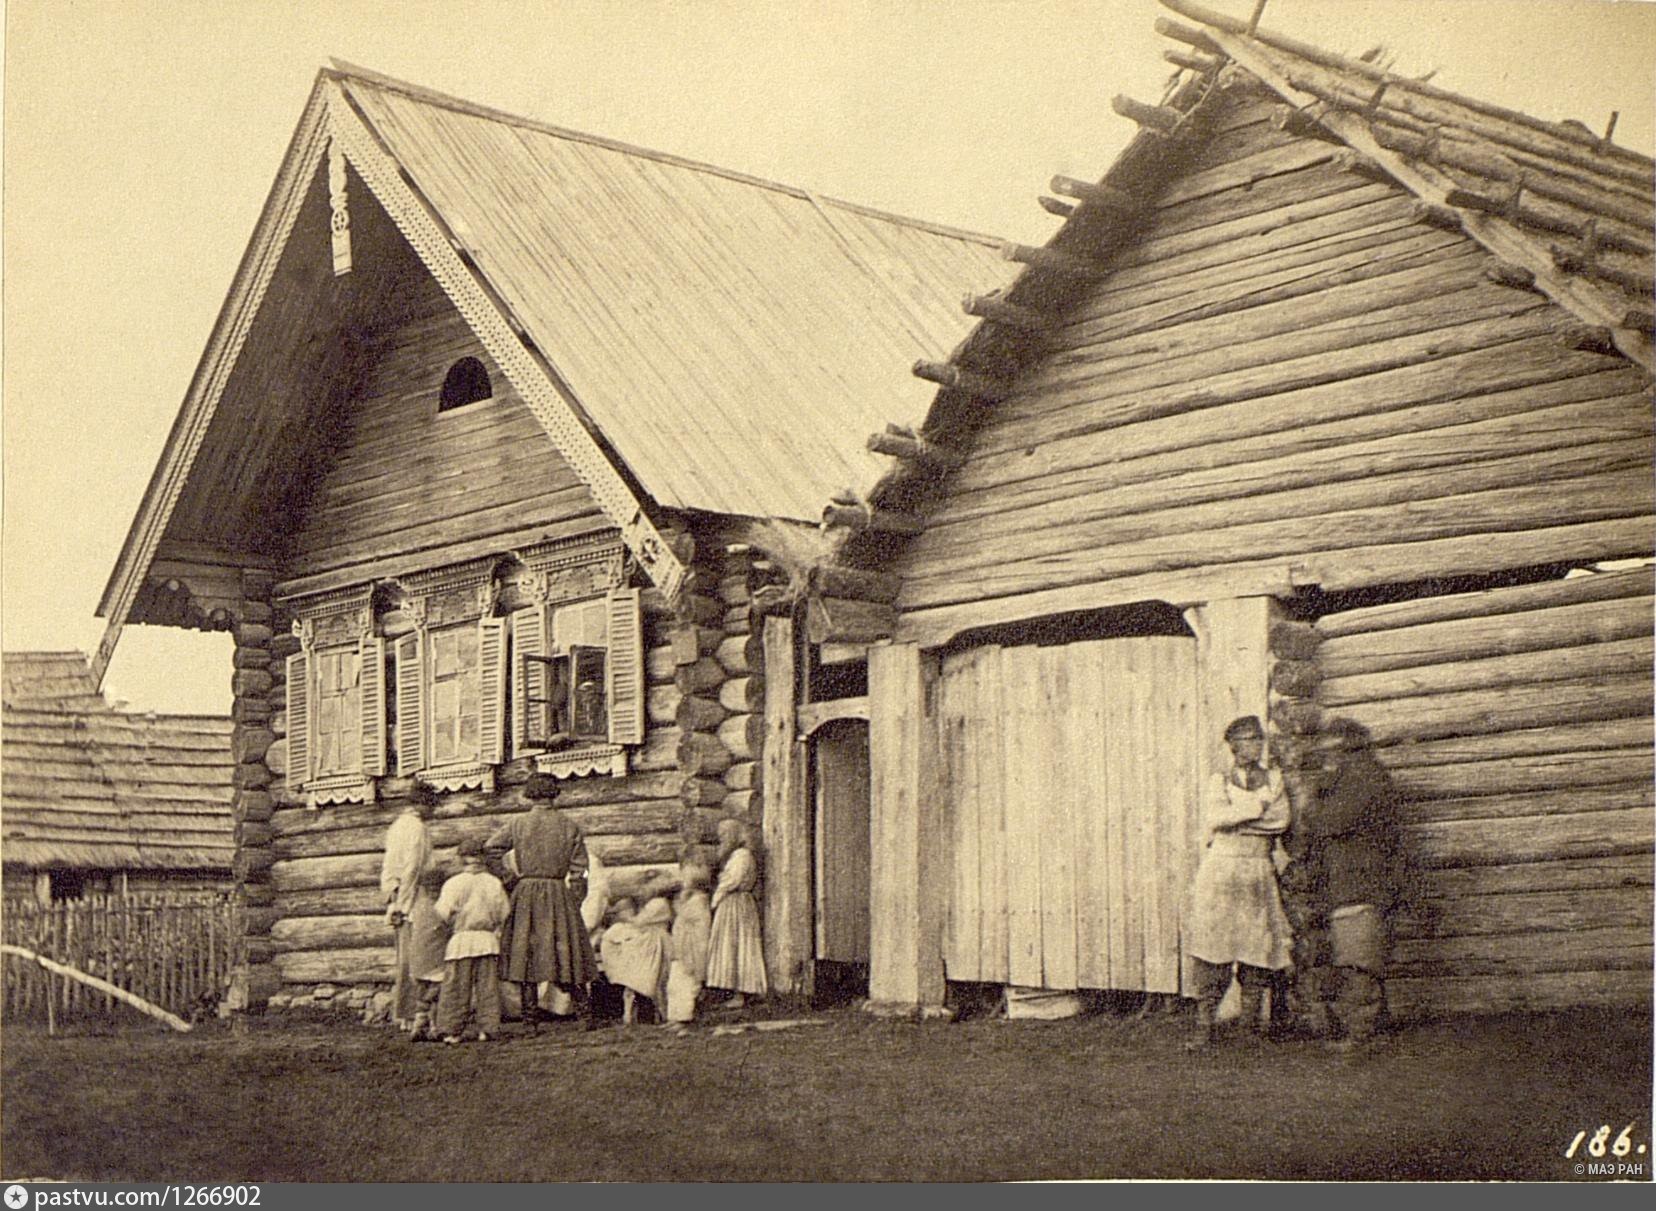 Крестьянская изба 19 века Тамбовской губернии